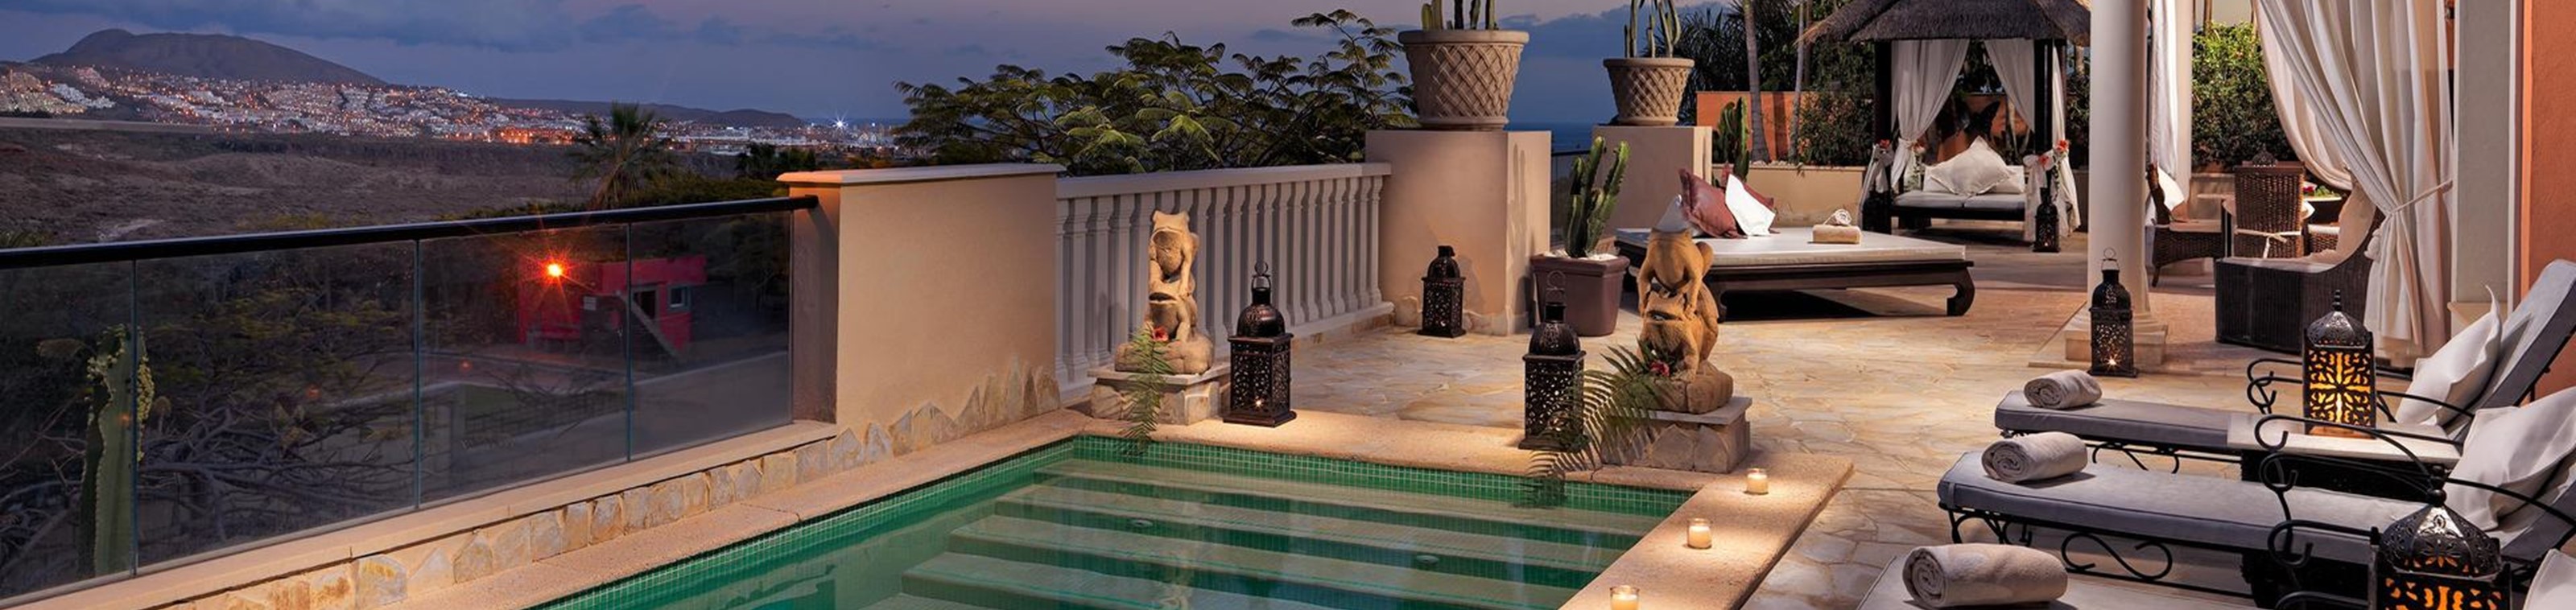 Ultieme luxe in je eigen villa op Tenerife